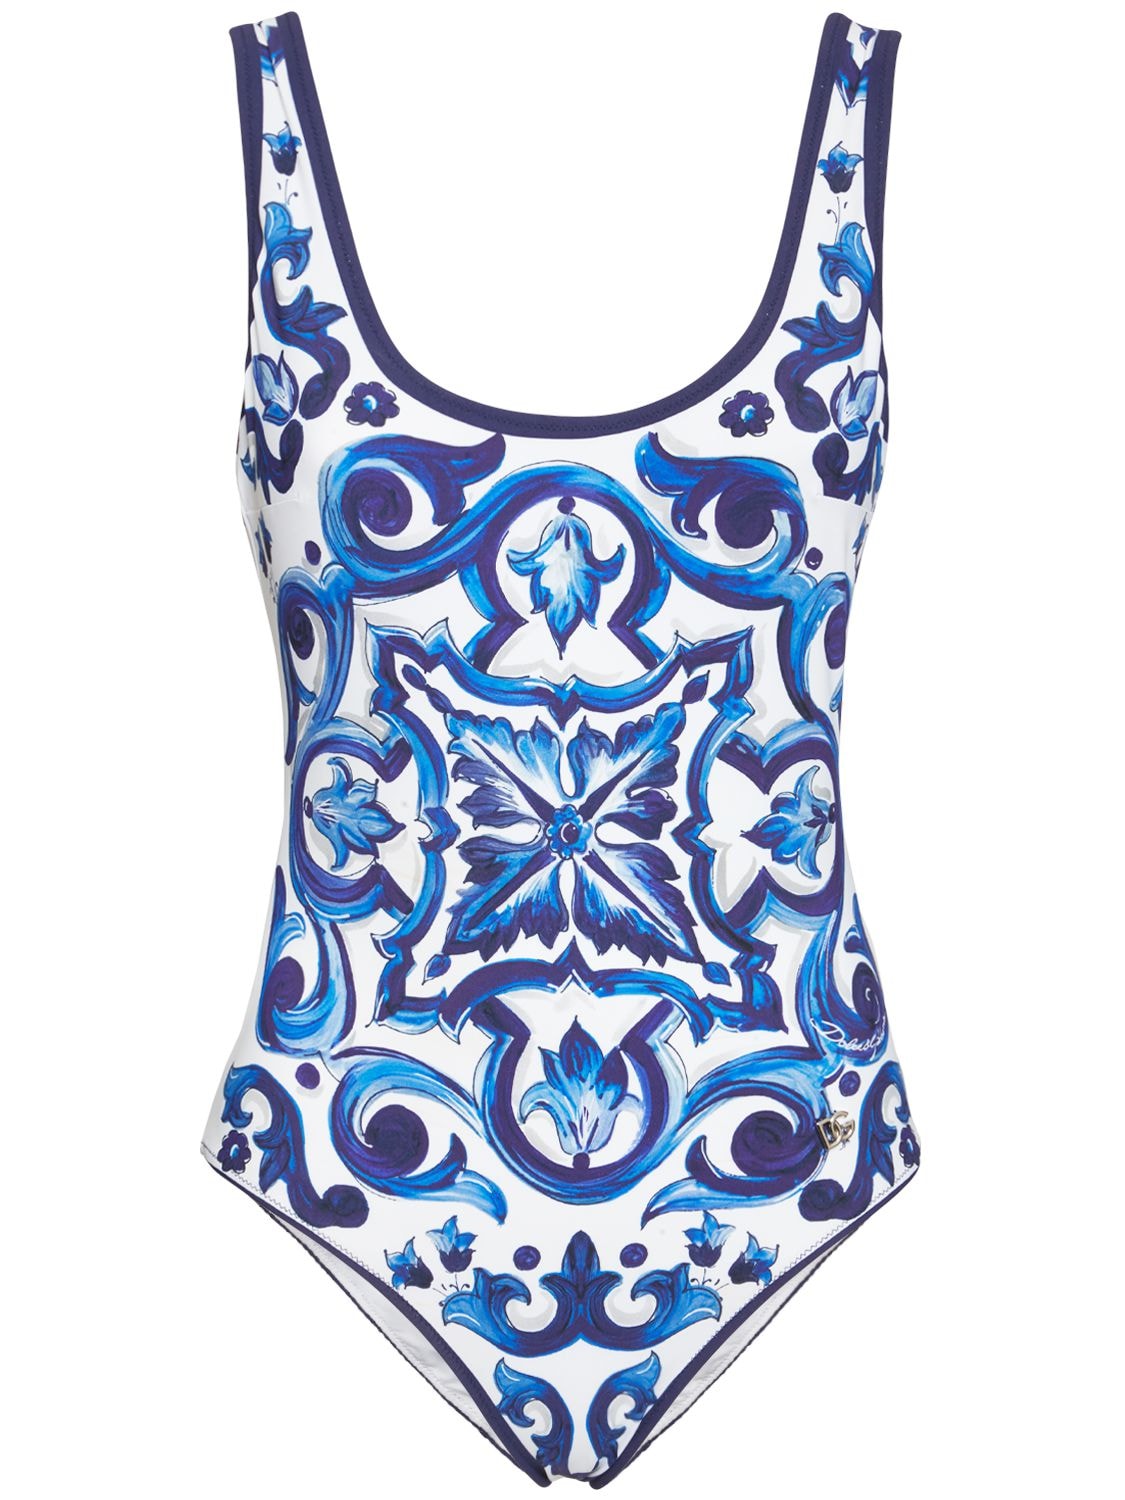 Dolce & Gabbana - Printed one piece swimsuit - Blue/White | Luisaviaroma